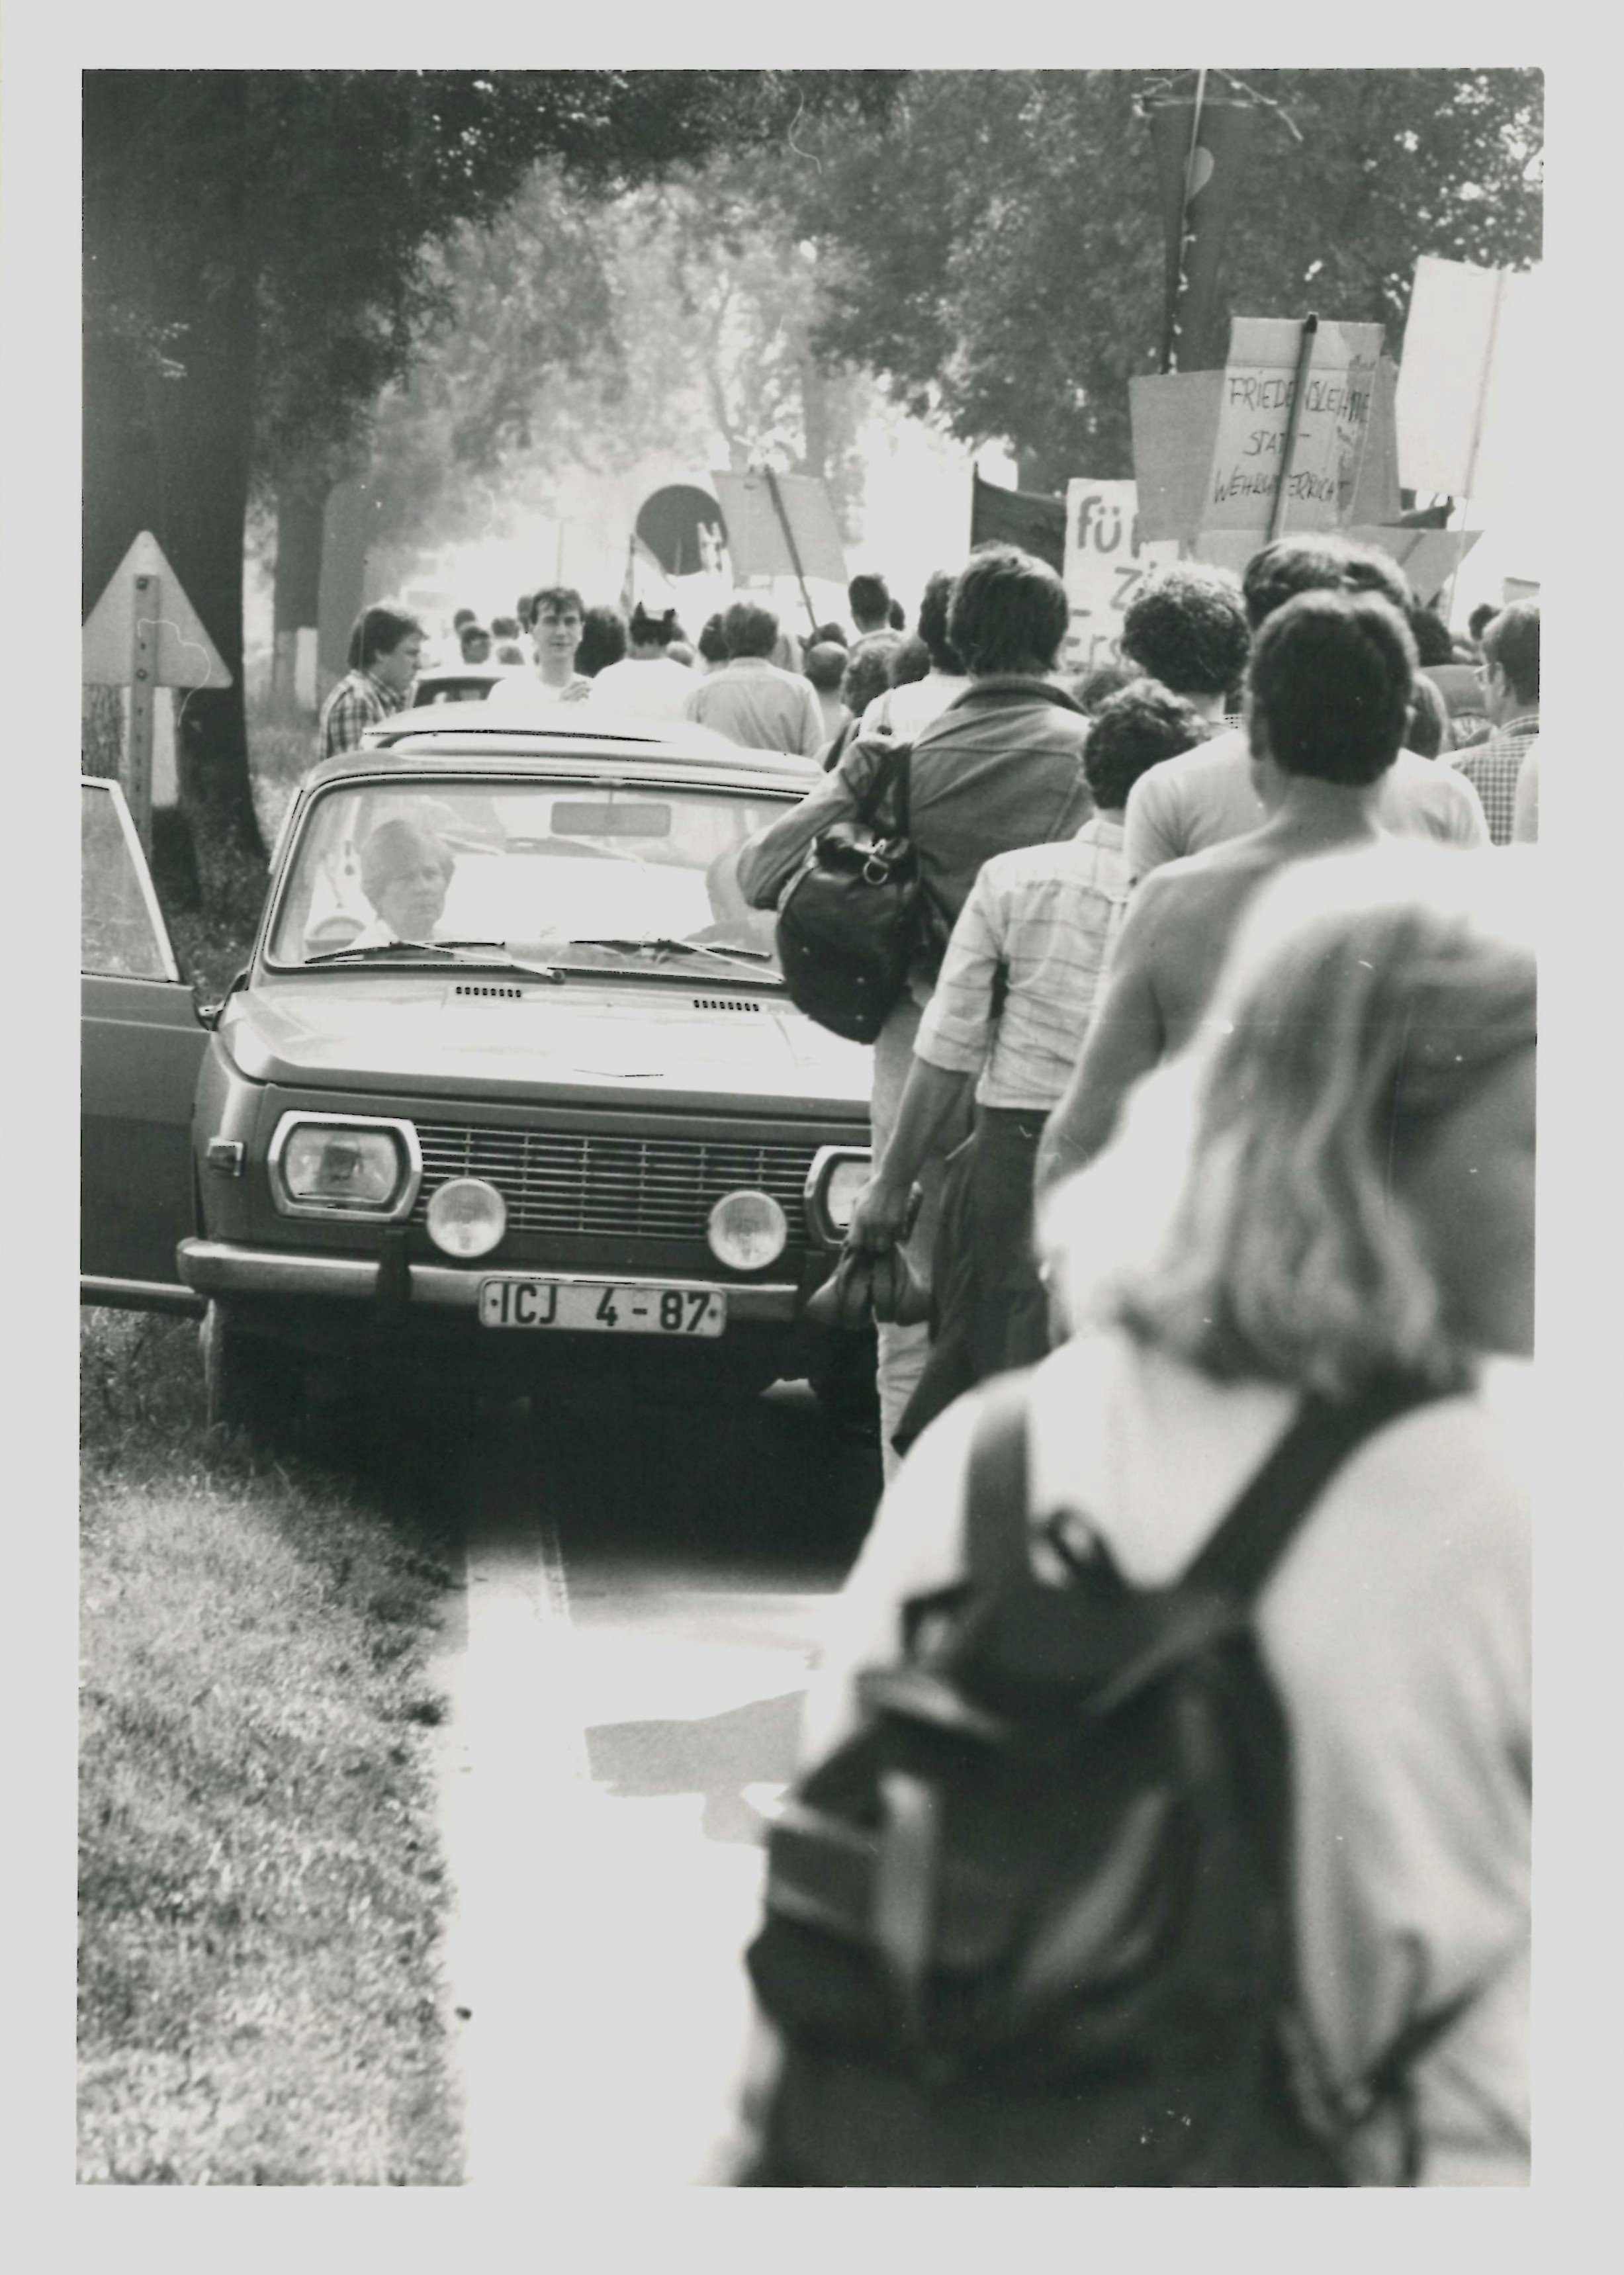 Olof-Palme-Marsch 1987: Demonstrationszug auf einer Landstraße (DDR Geschichtsmuseum im Dokumentationszentrum Perleberg CC BY-SA)